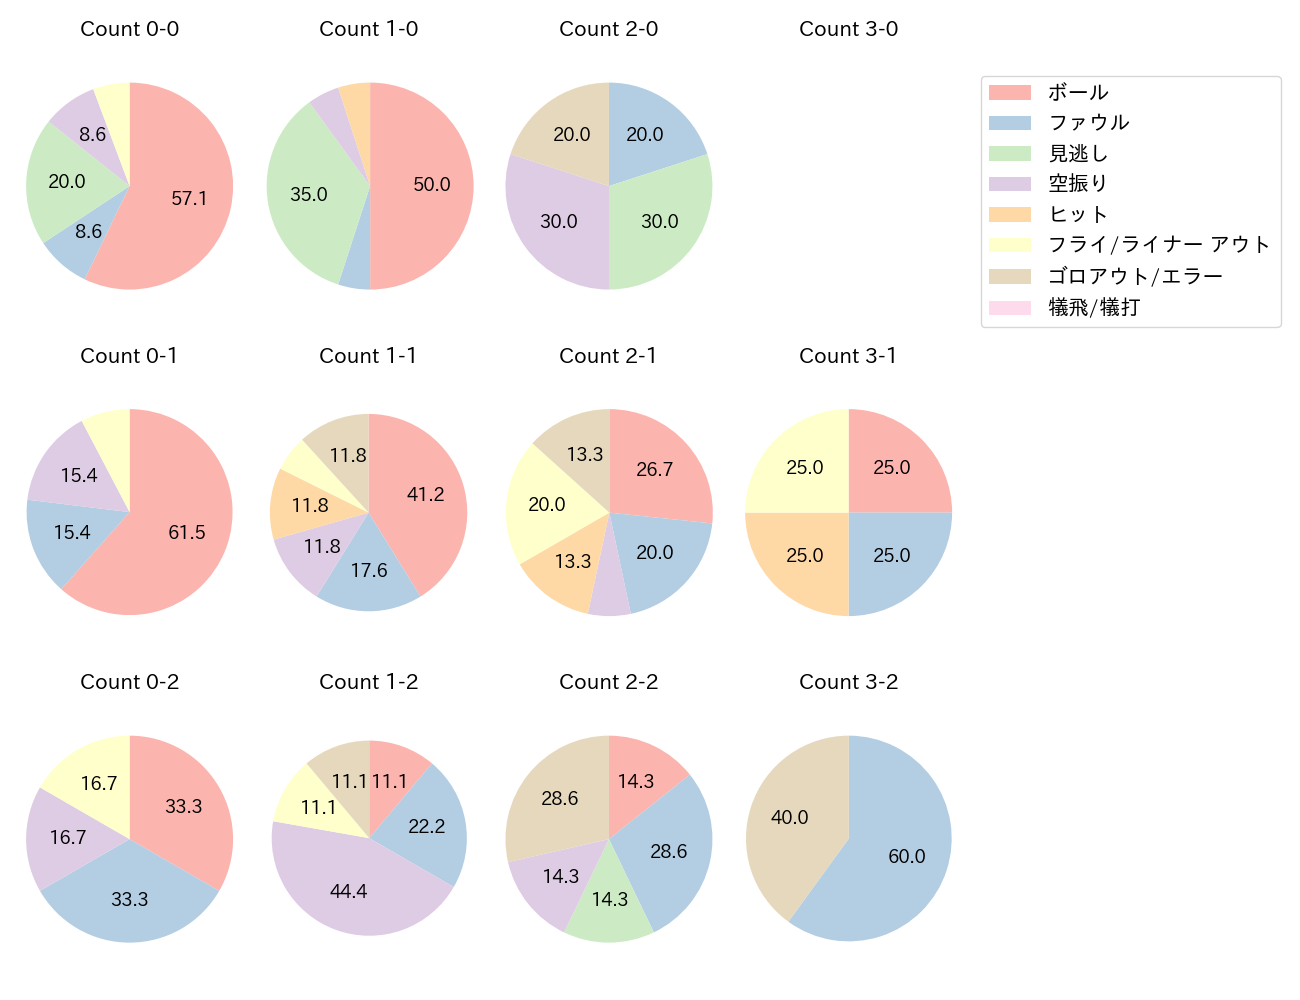 小野寺 暖の球数分布(2021年10月)